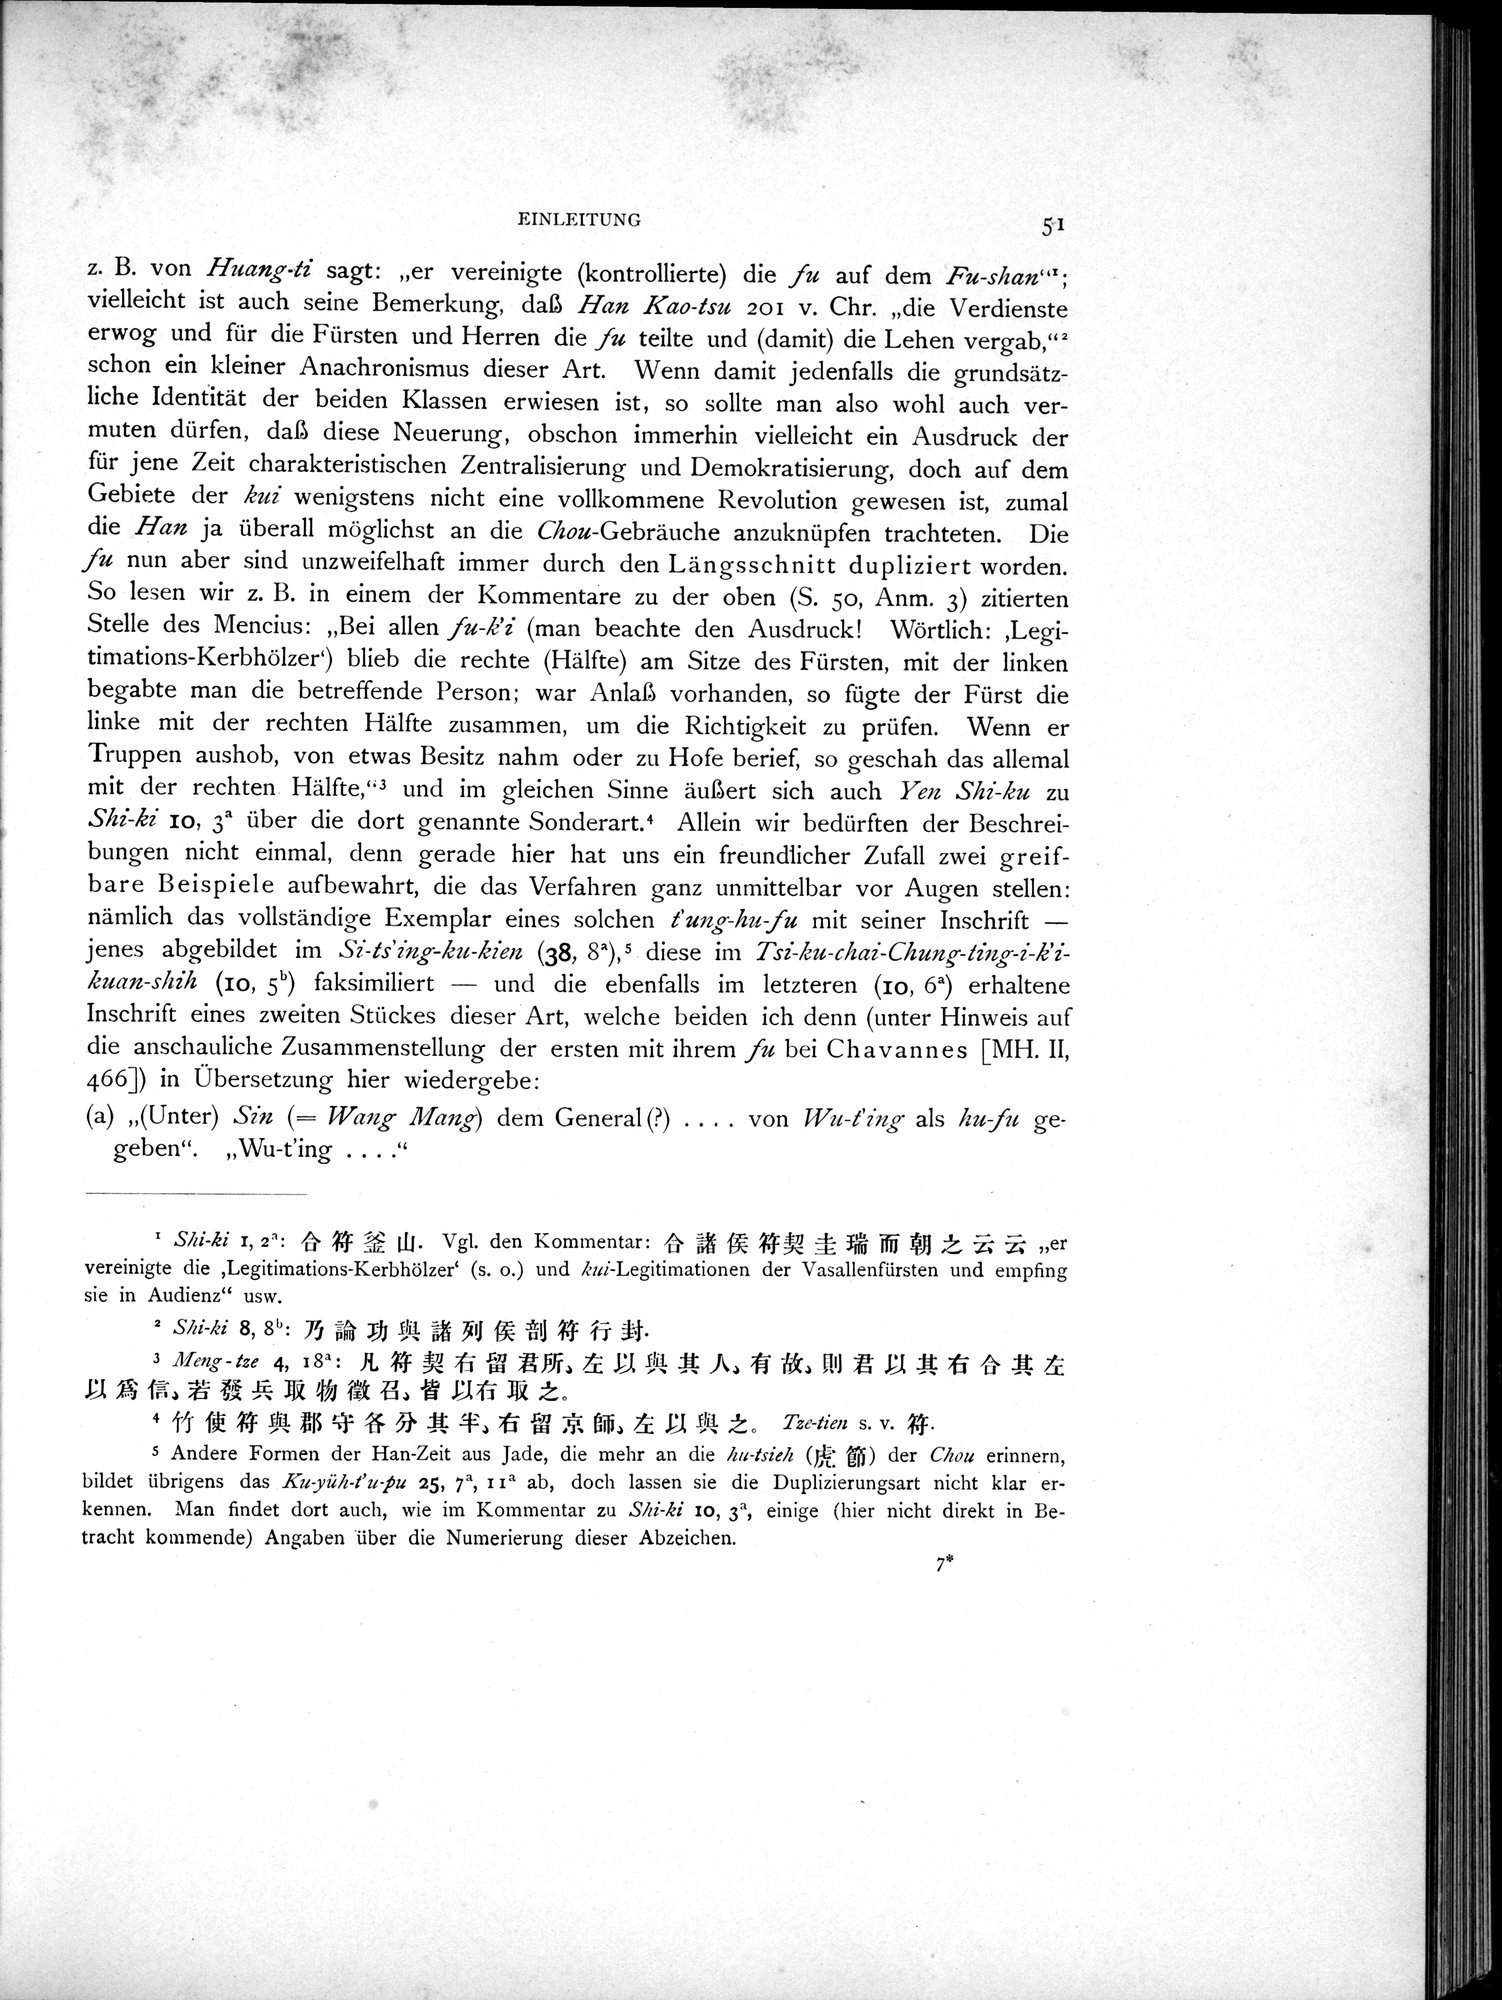 Die Chinesischen Handschriften- und sonstigen Kleinfunde Sven Hedins in Lou-lan : vol.1 / Page 75 (Grayscale High Resolution Image)